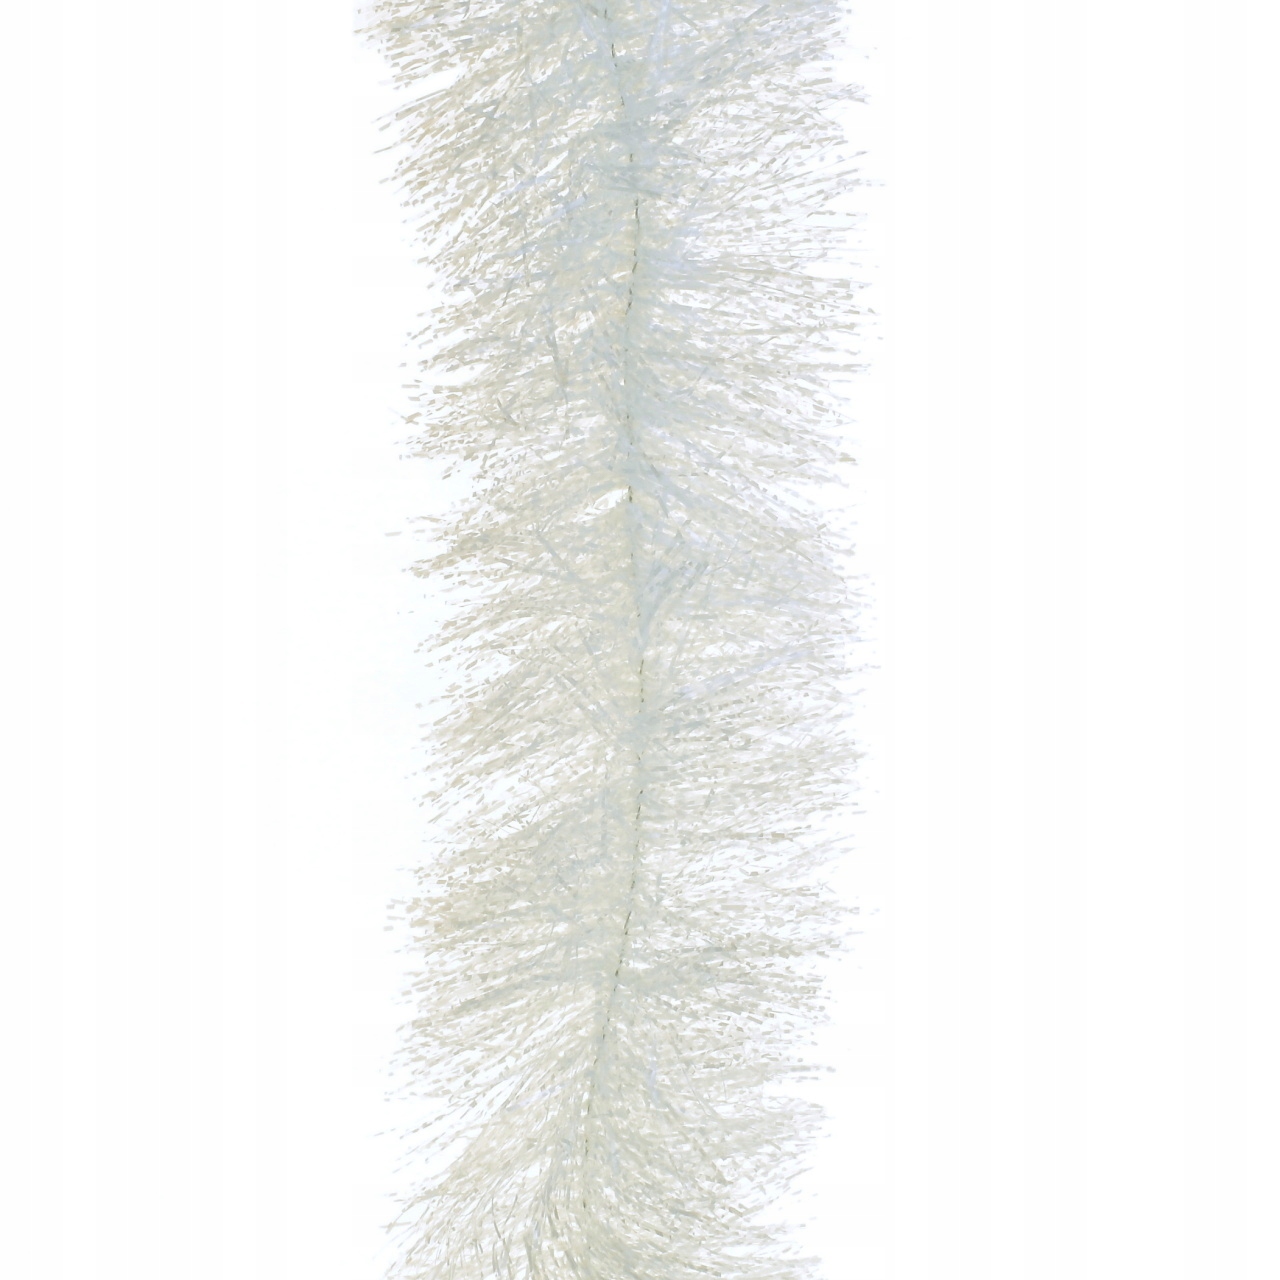 Vianočná reťaz biela, dlhá 2,7 m